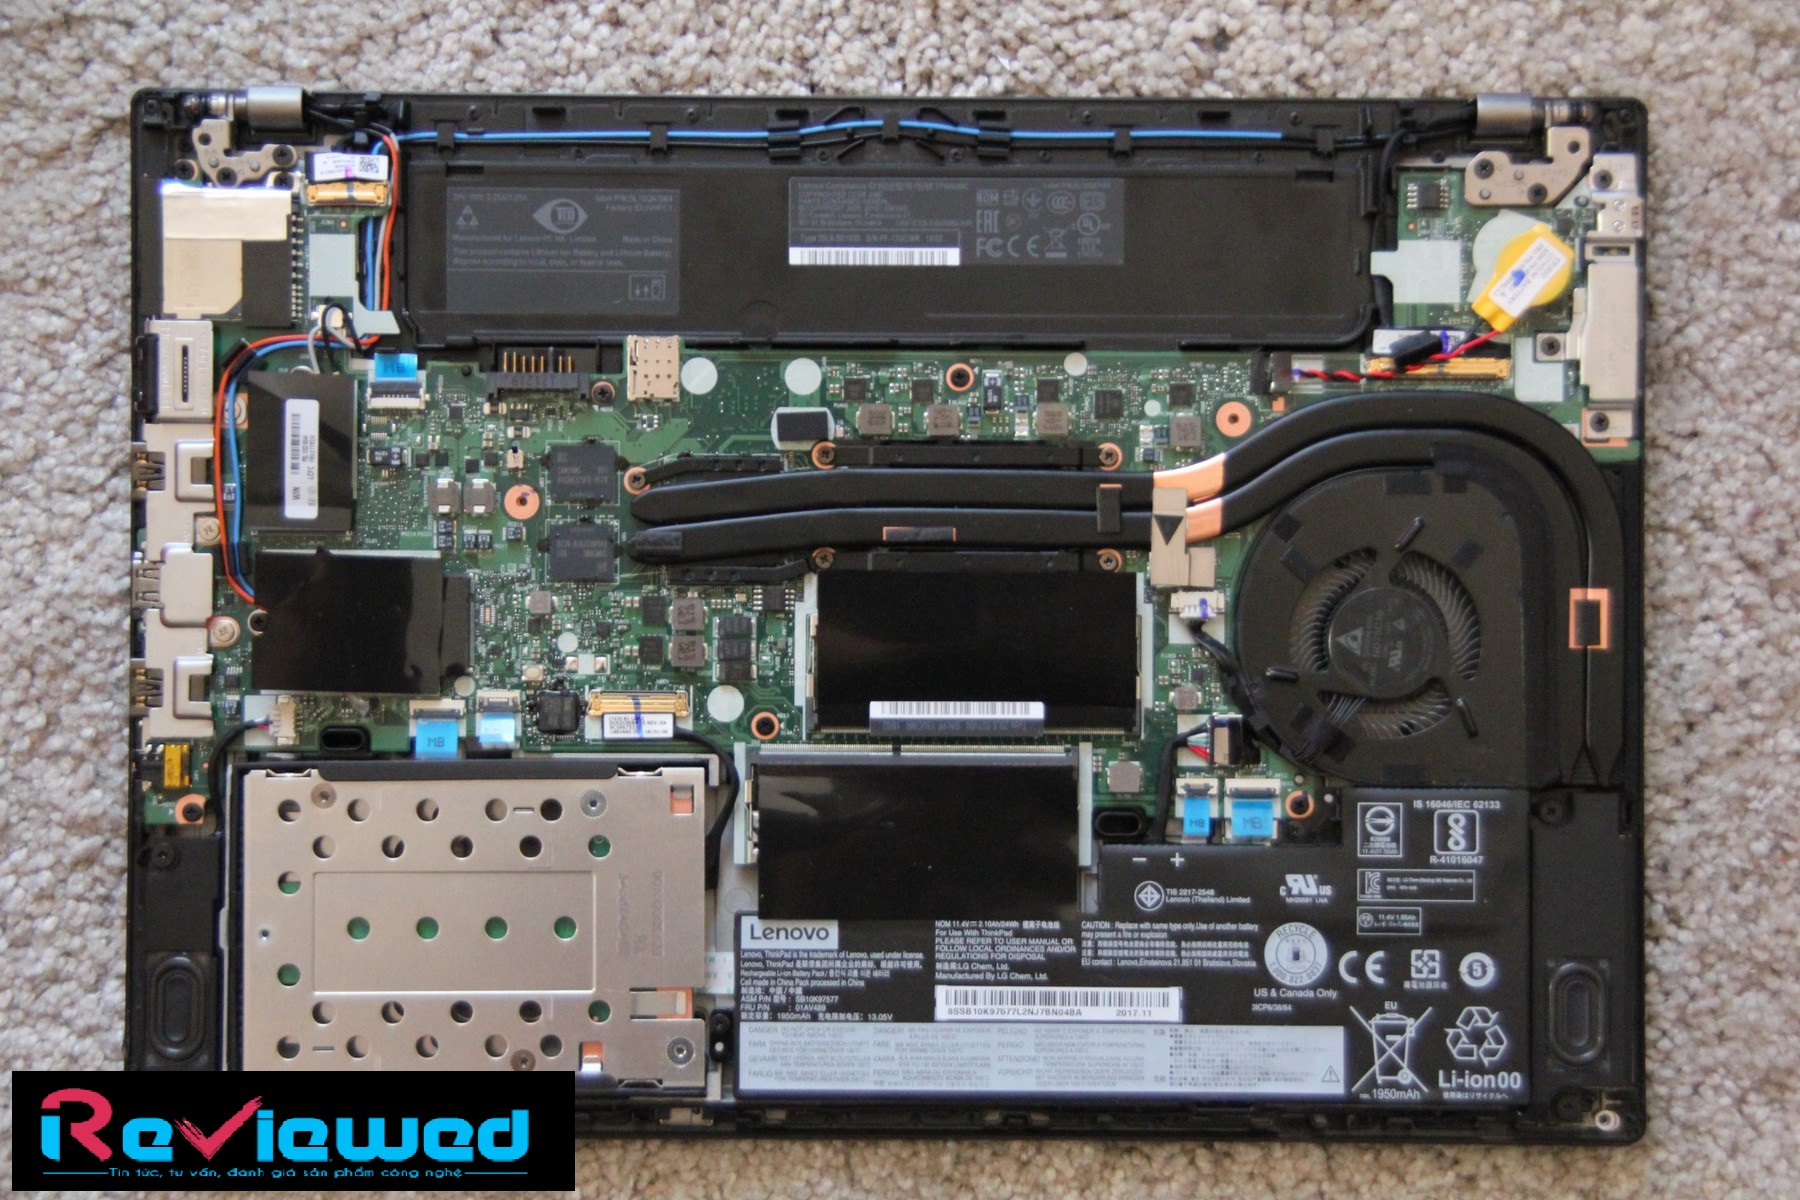 Đánh giá Laptop Lenovo Thinkpad T480 (i7-8550U, MX150, FHD), Chuyên trang tư vấn về Laptop